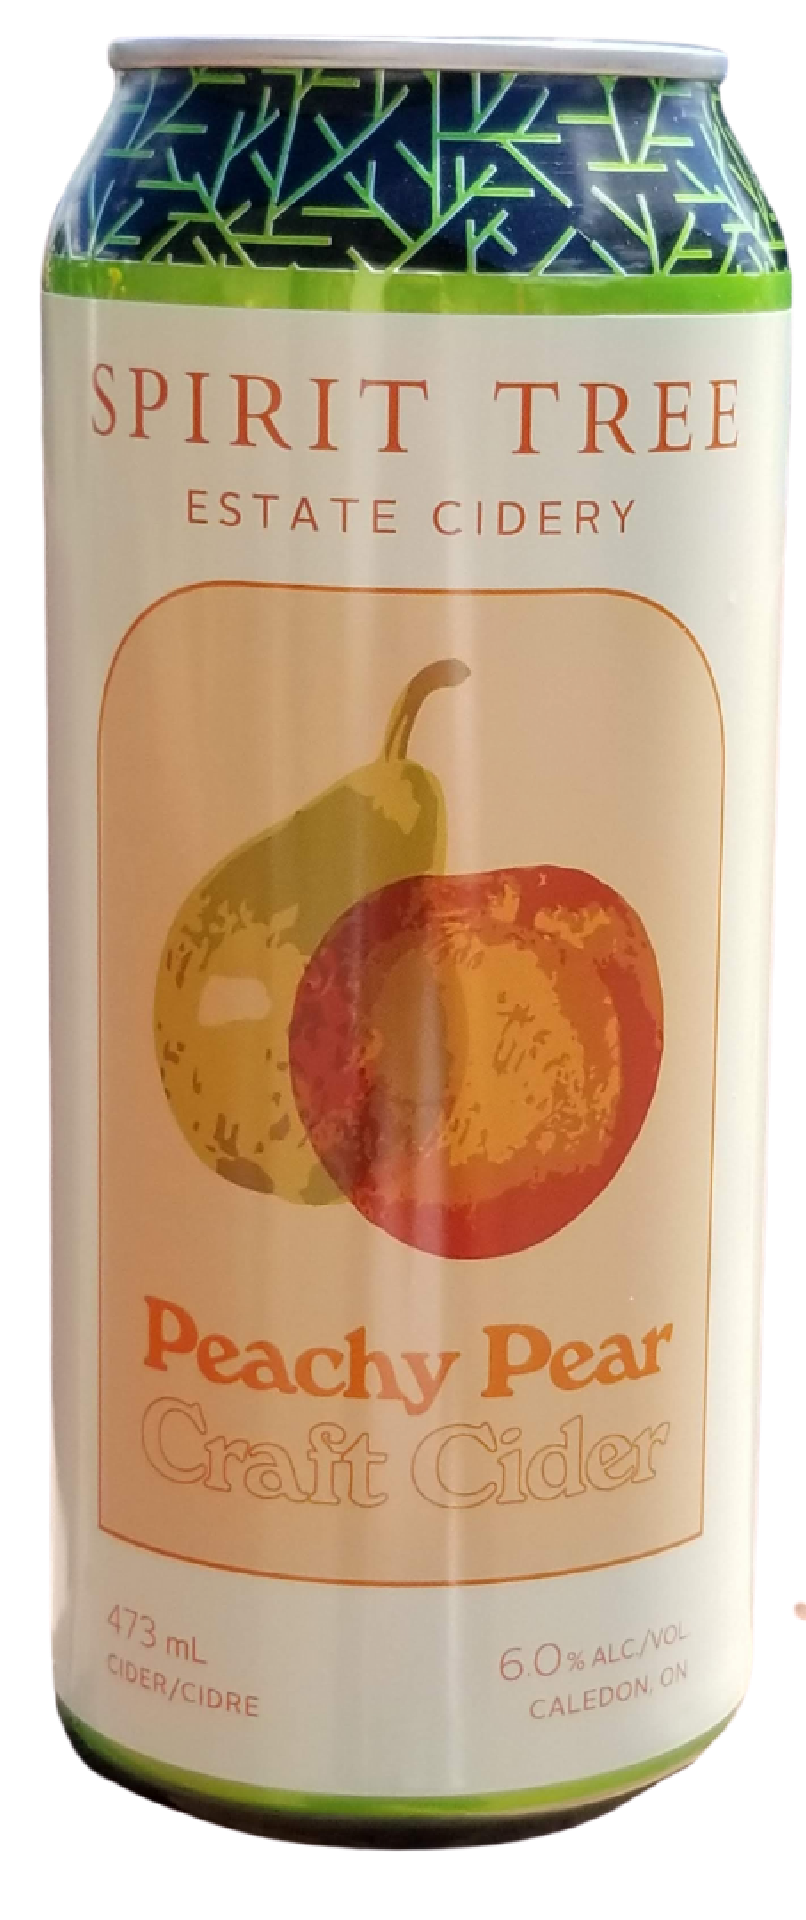 Peachy Pear Cider